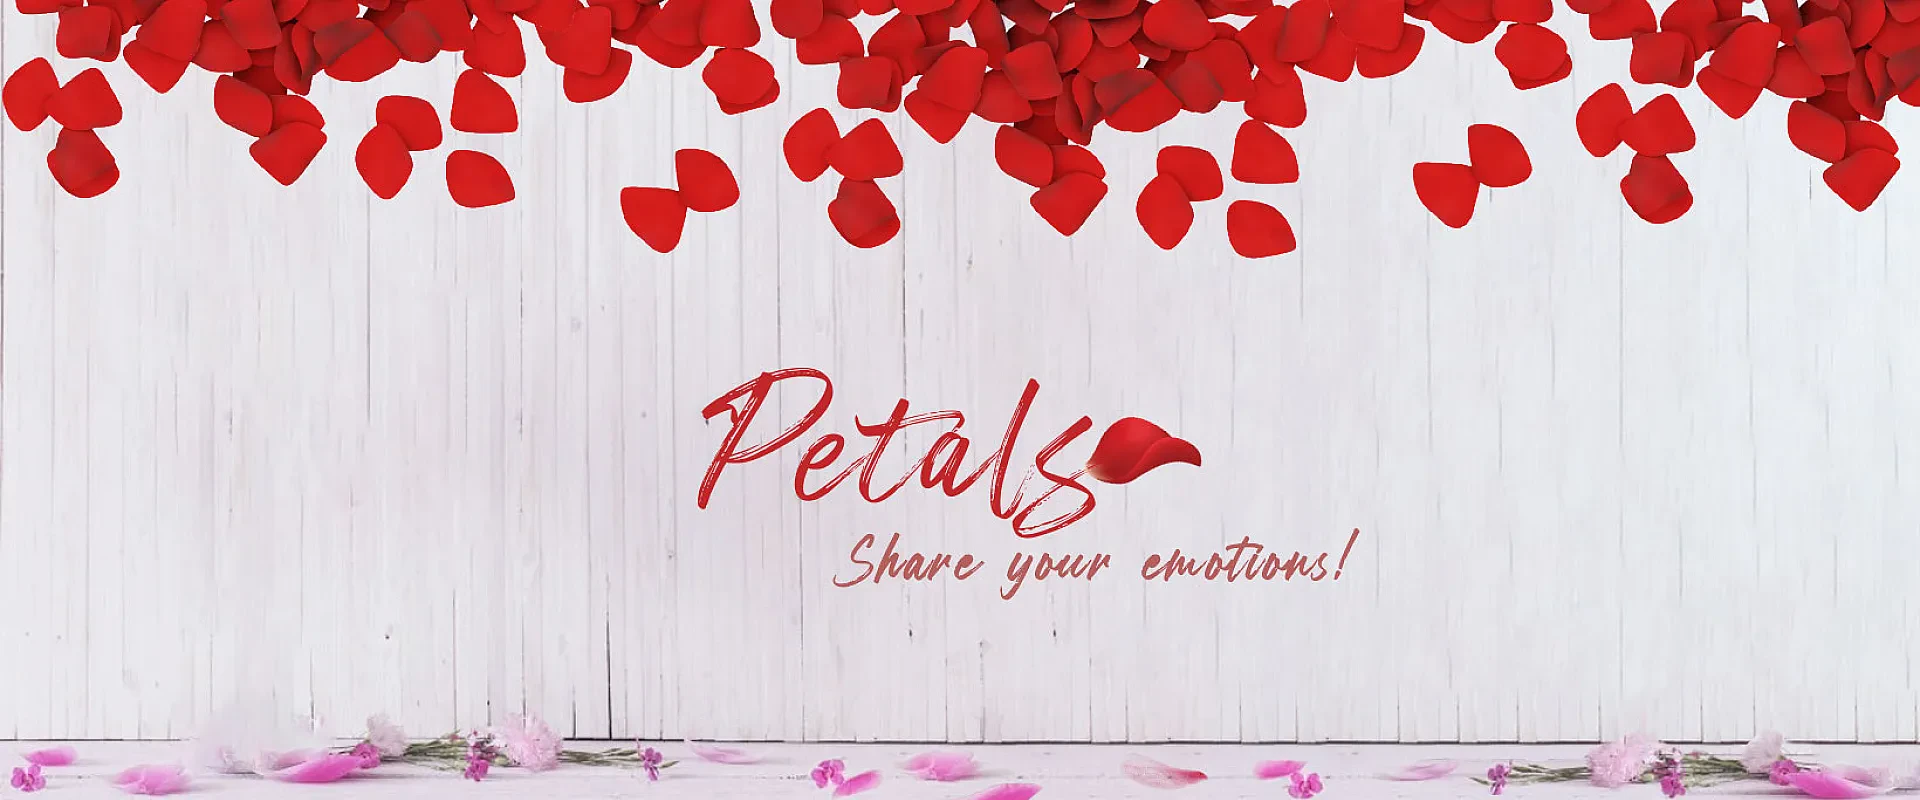 Petals Qatar - Flowers & Plants Shop